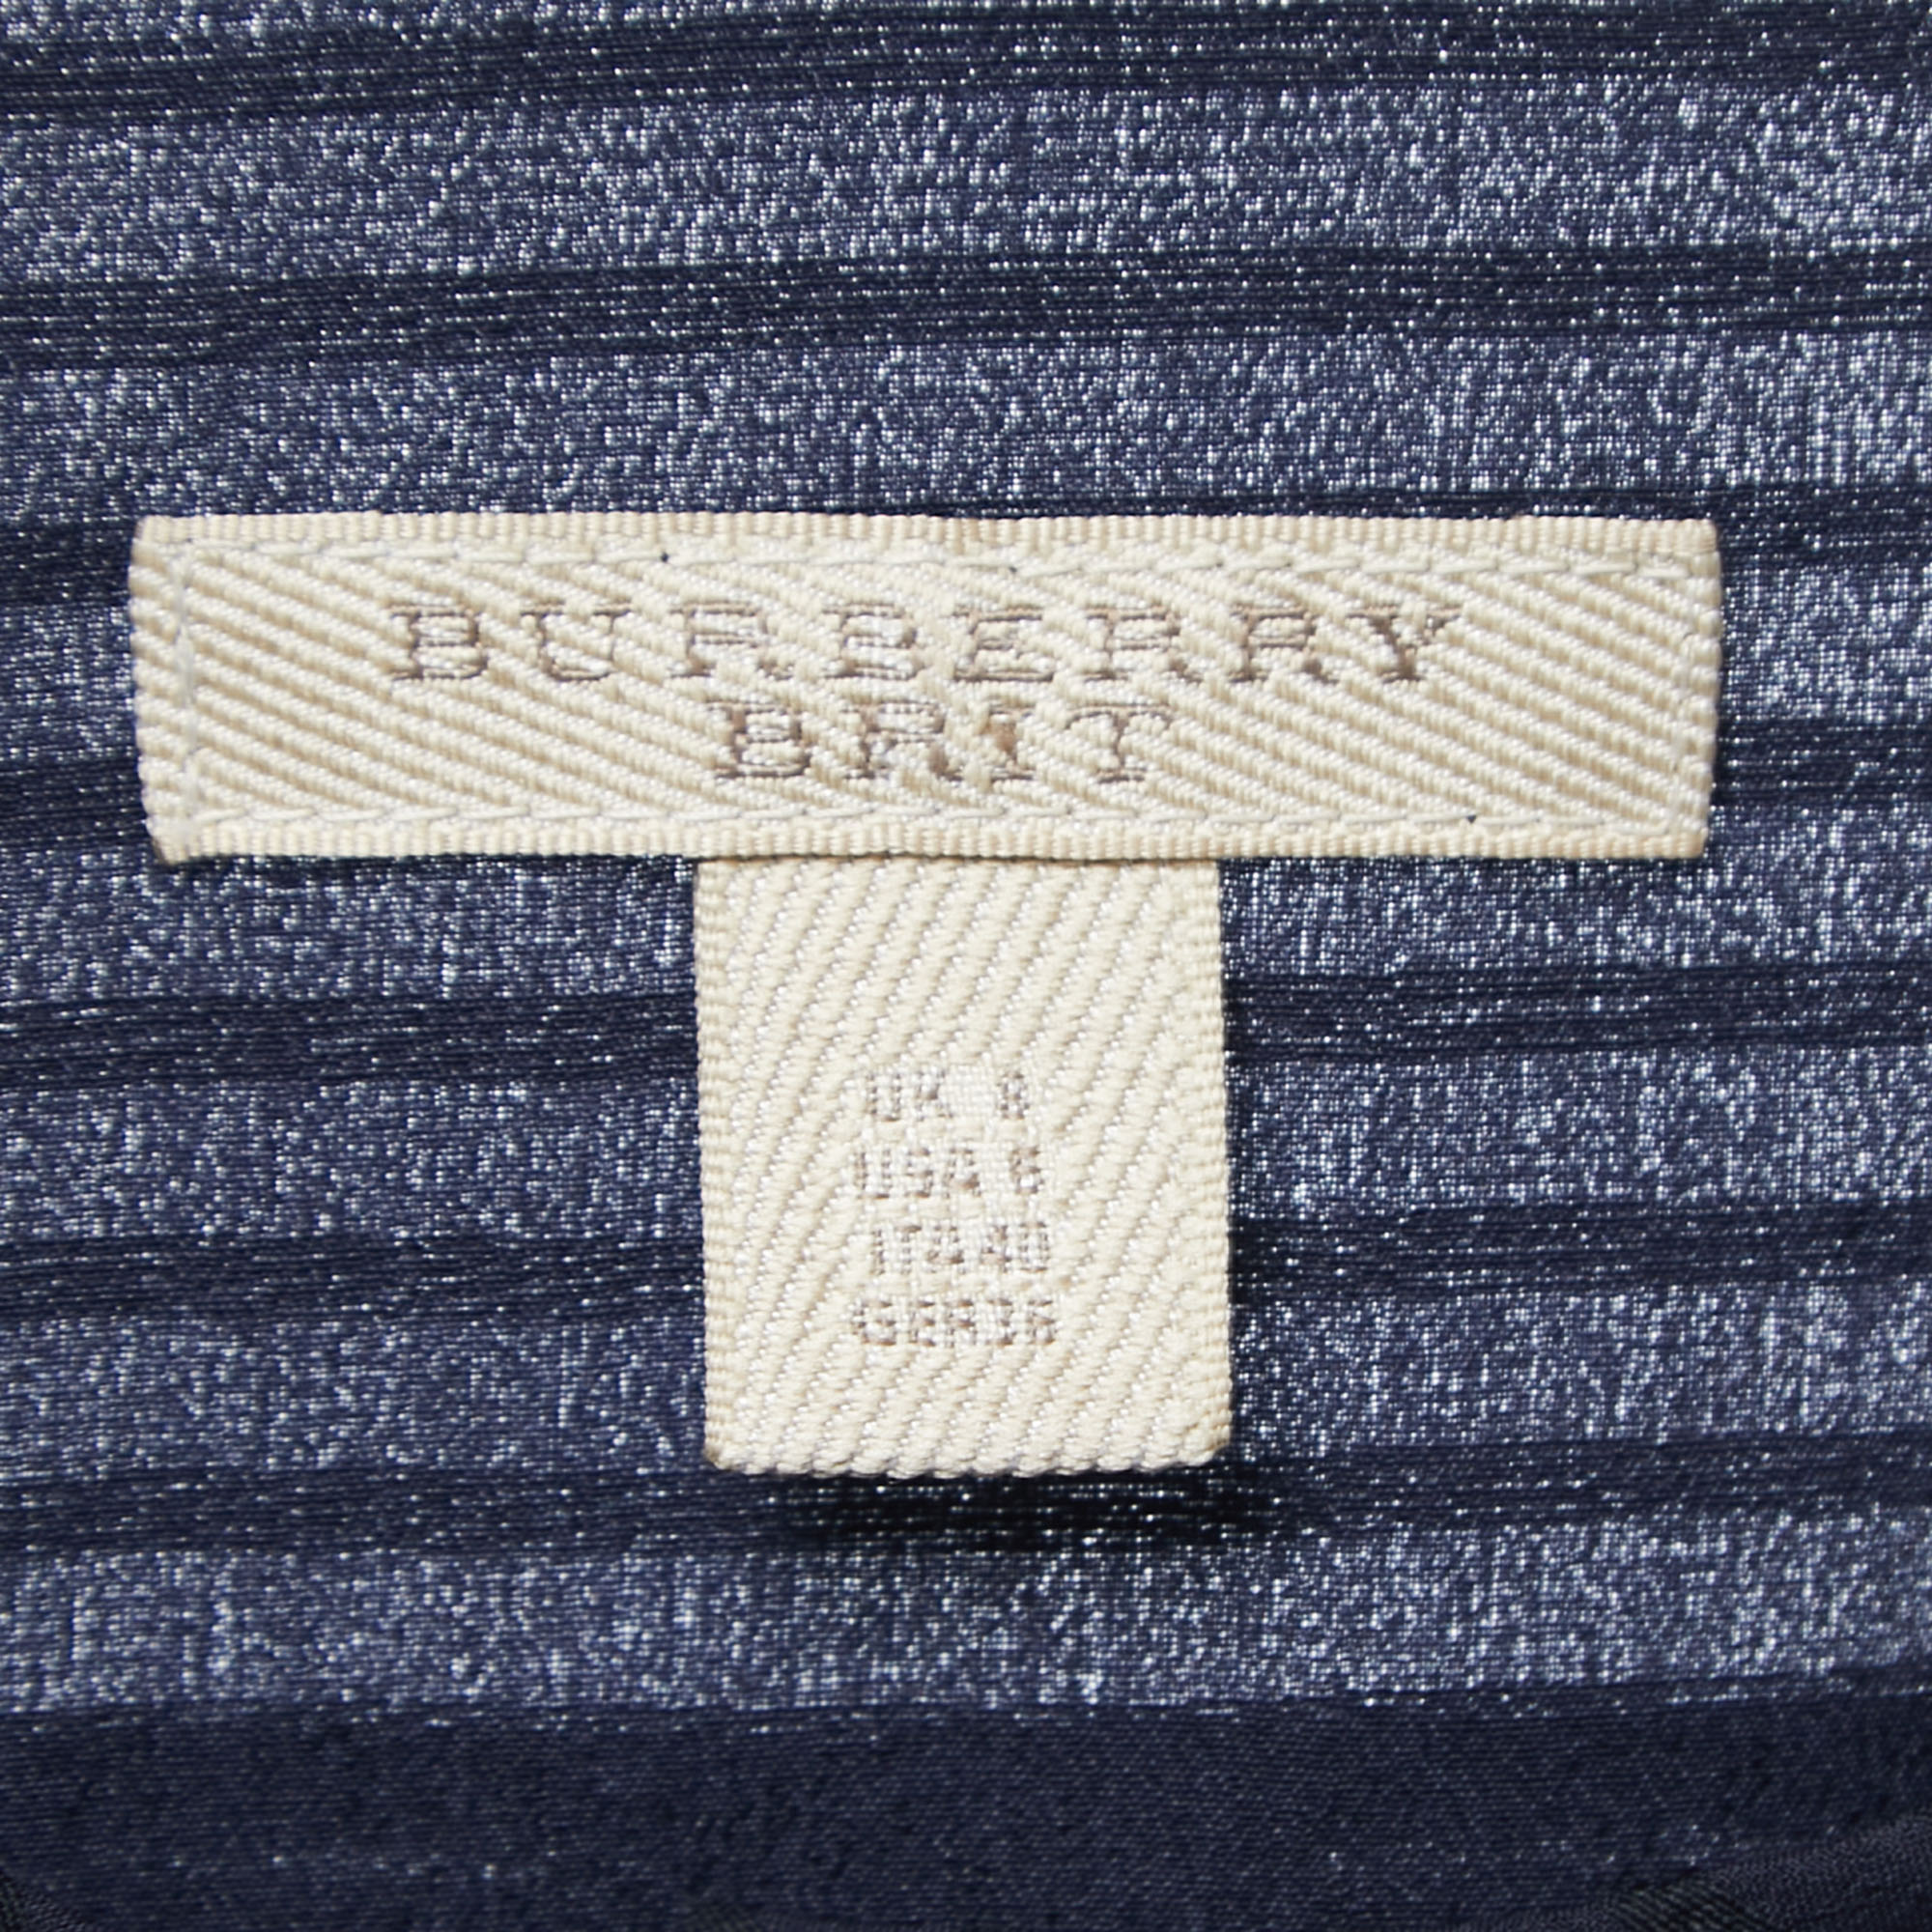 Burberry Brit Navy Blue Striped Wool & Silk Pleated Midi Dress S